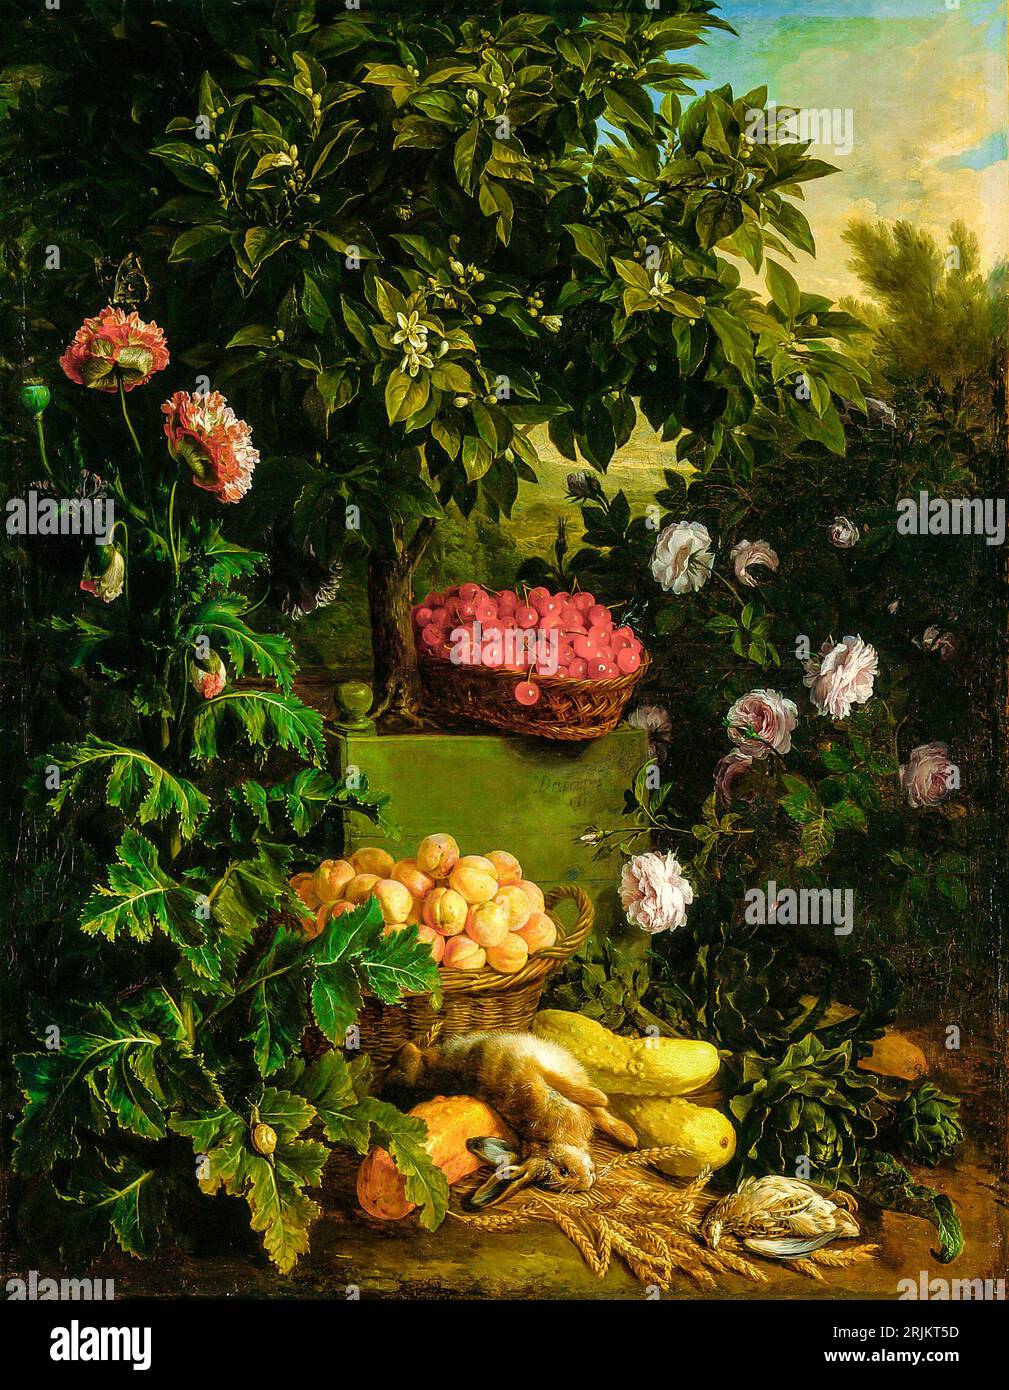 Estate, 1711. Alexandre Francois Desportes, francese, 1661-1743. La scena è piena di flora vibrante, come alte erbe, fiori, alberi, arbusti, Foto Stock